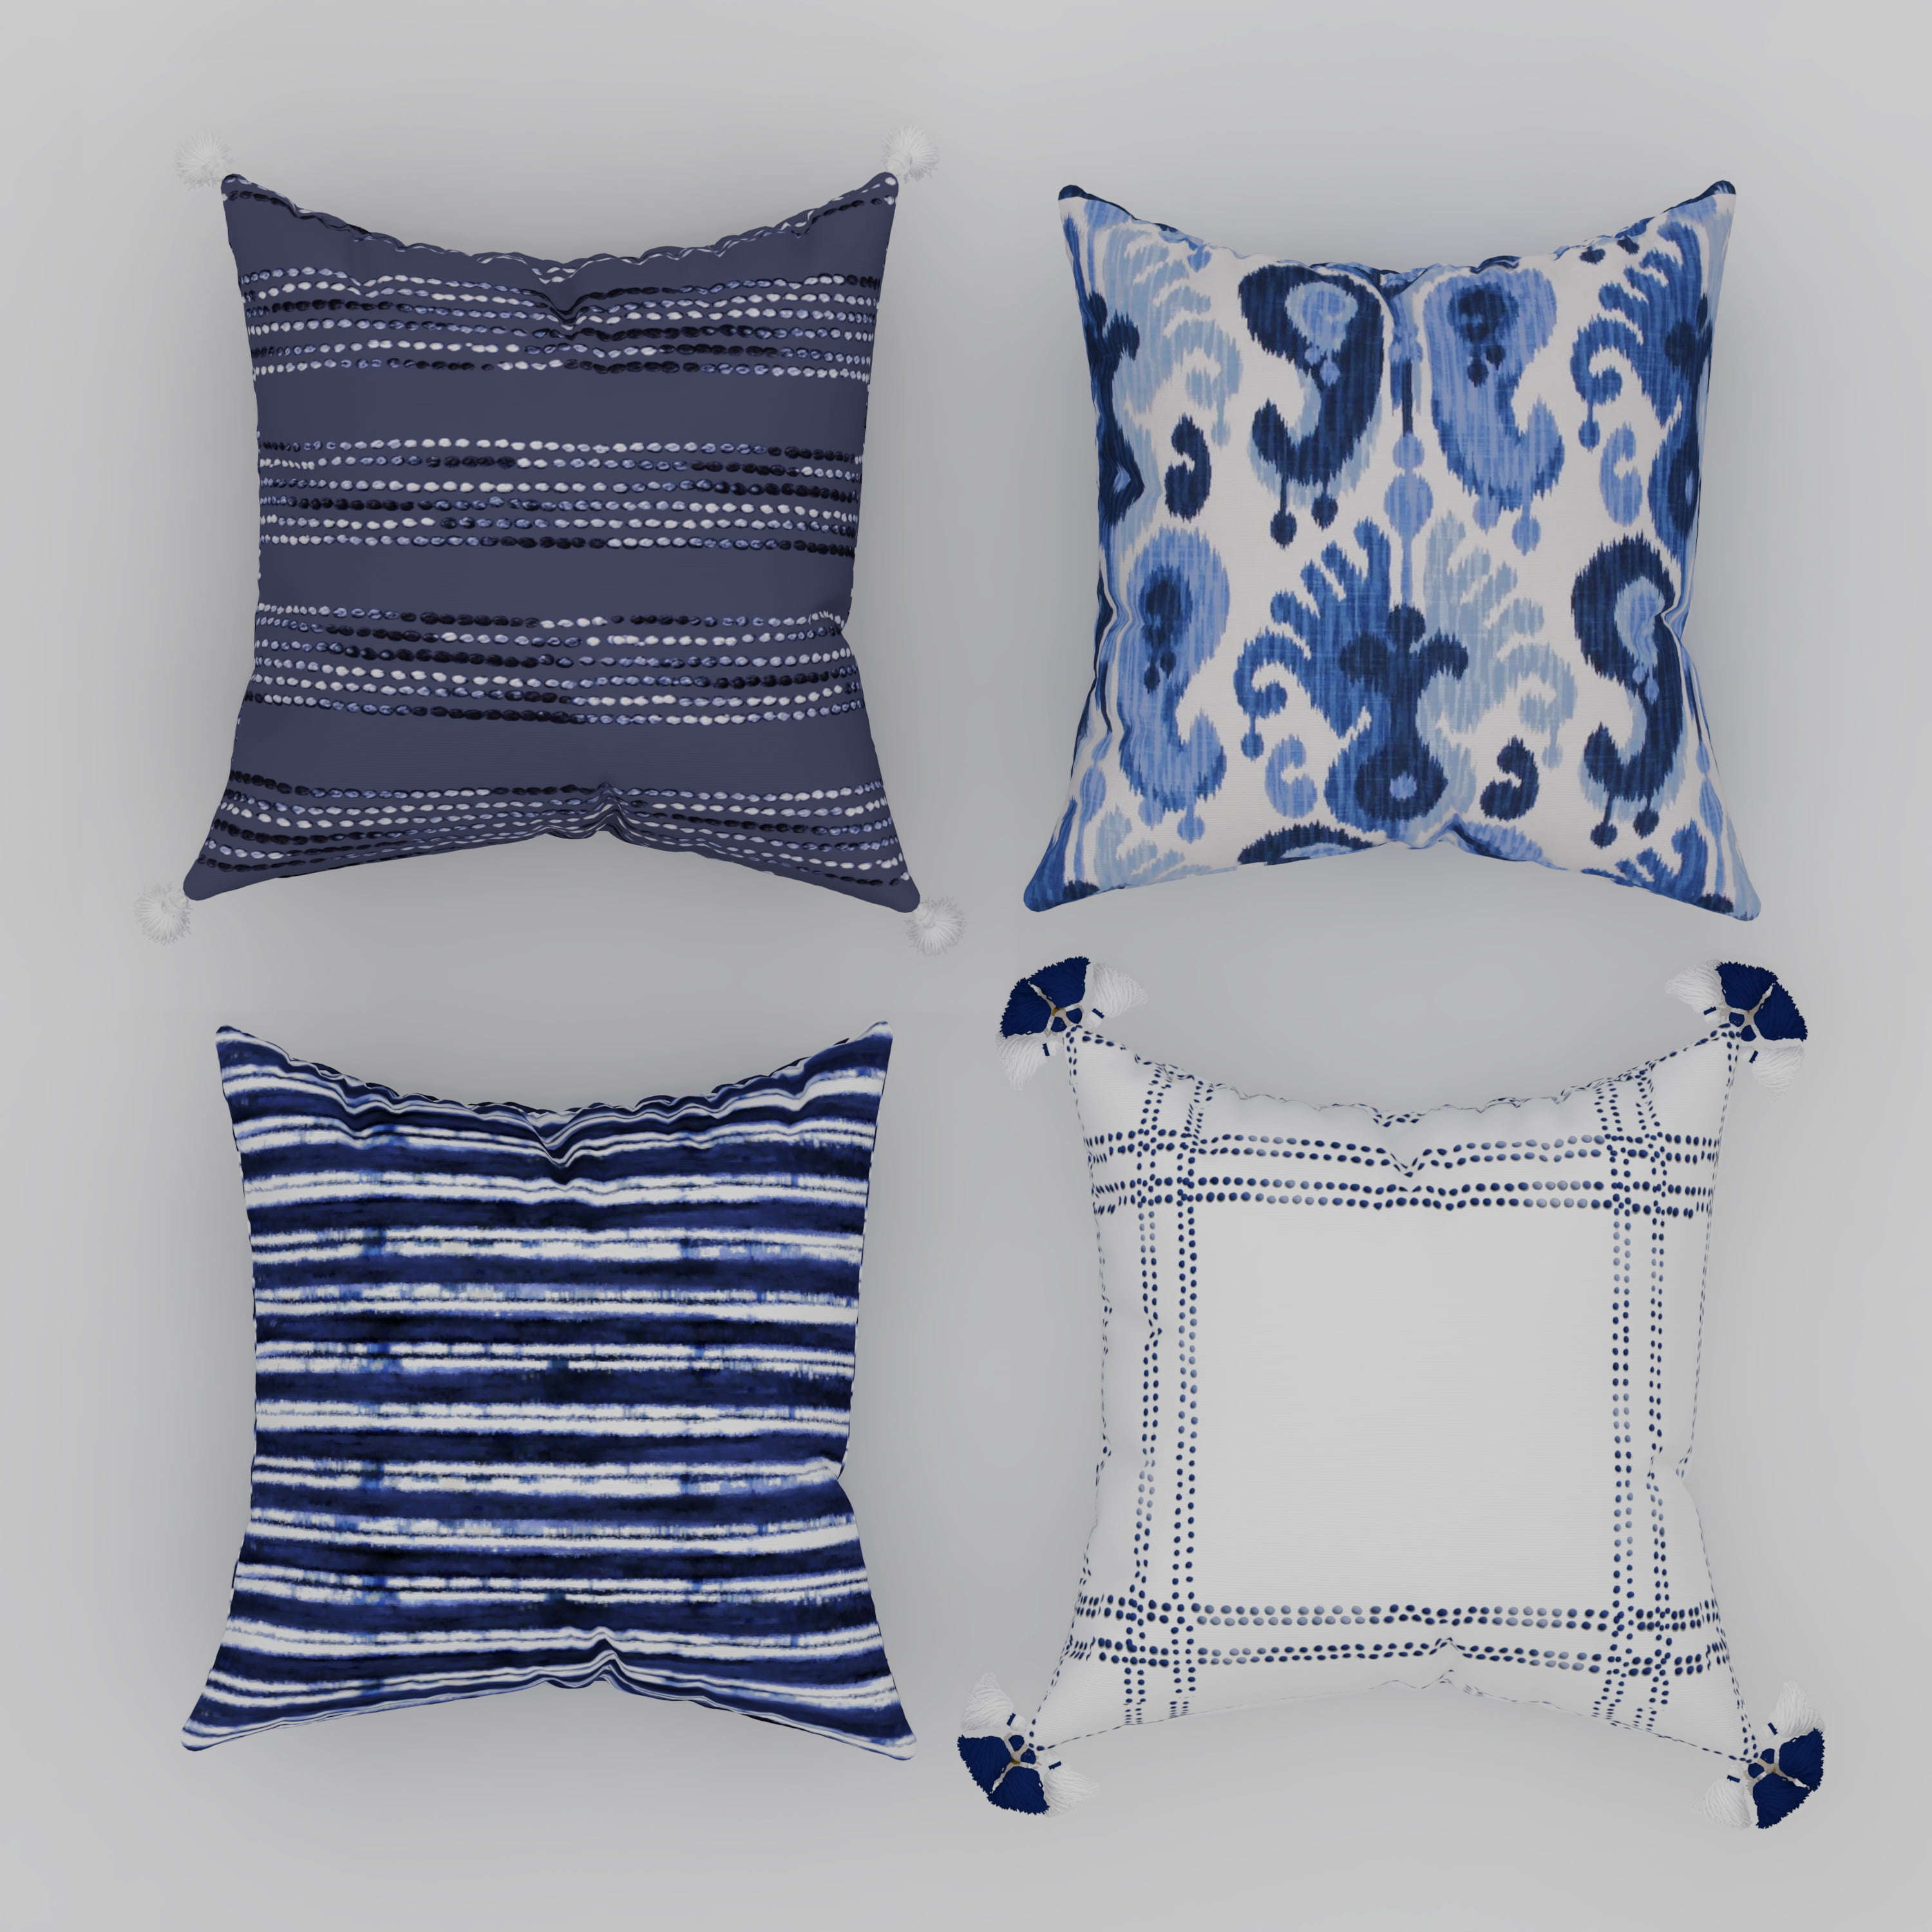 18"x18" Blue Pillow Case Sofa Car Waist Throw Cushion Cover Home Decor Geometric 